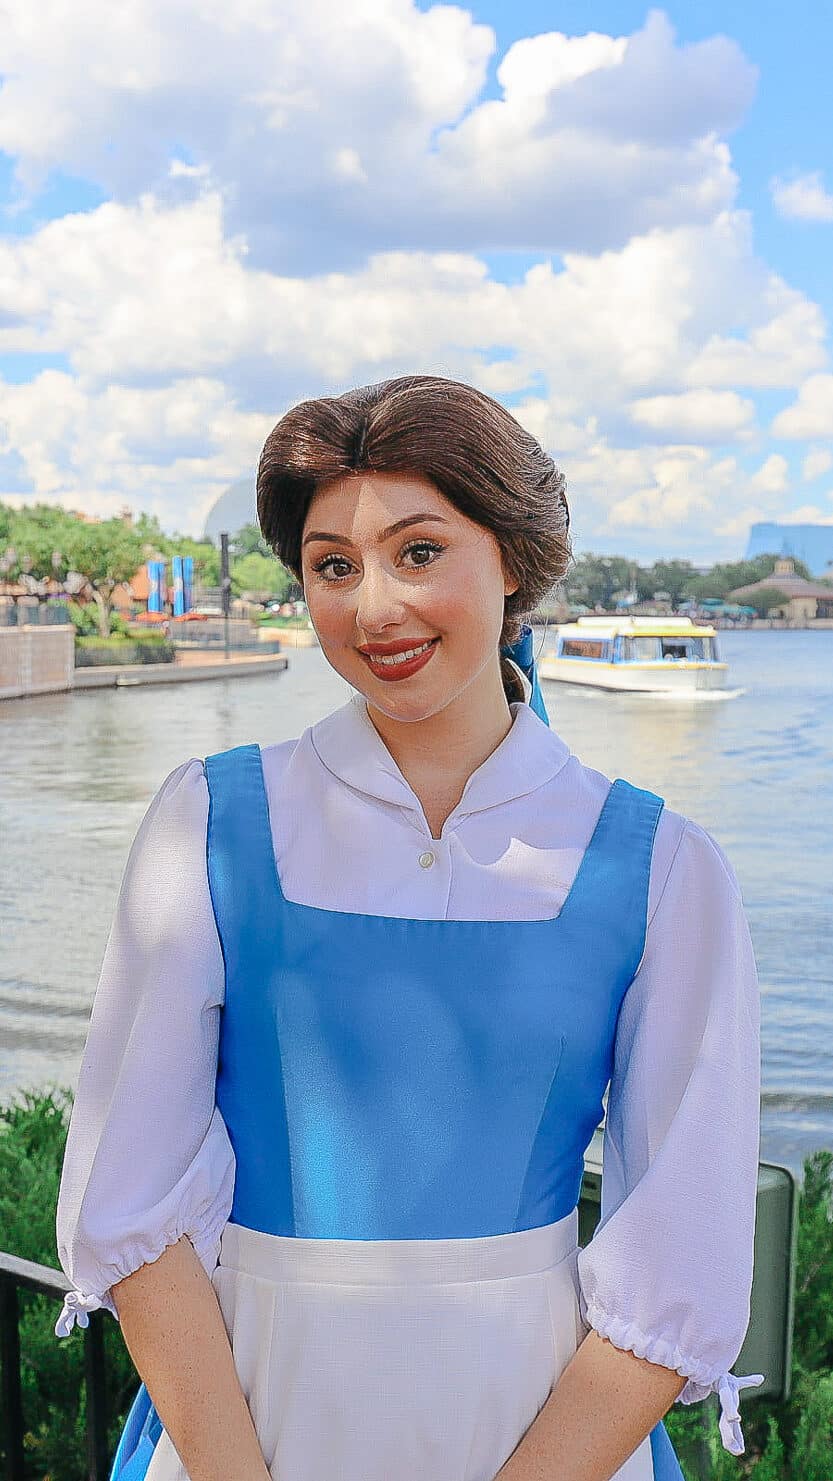 Belle in blue village dress. 